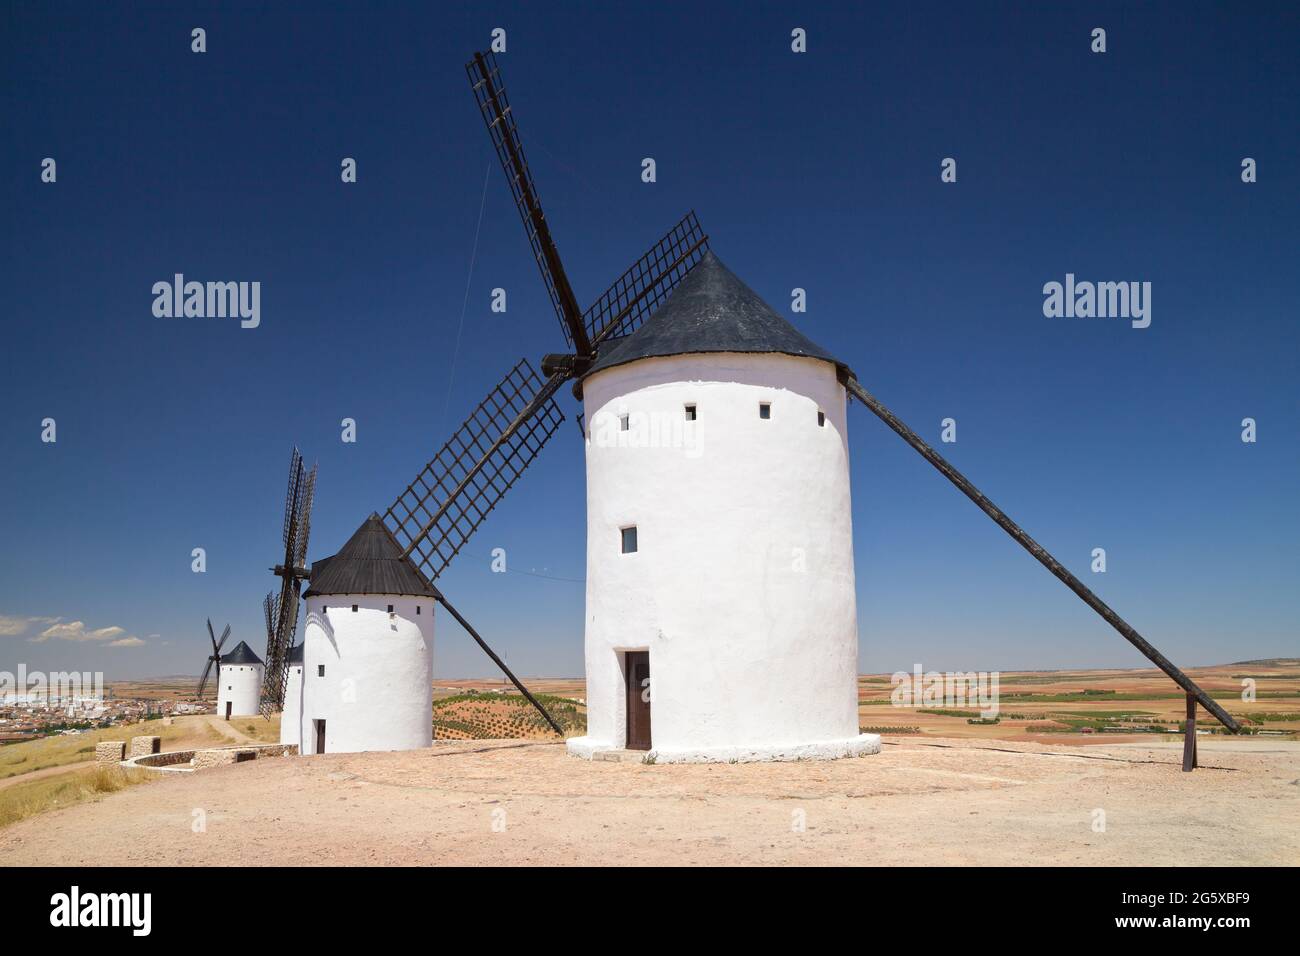 Windmühlen von Alcazar de San Juan, Ciudad Real, Spanien. Stockfoto